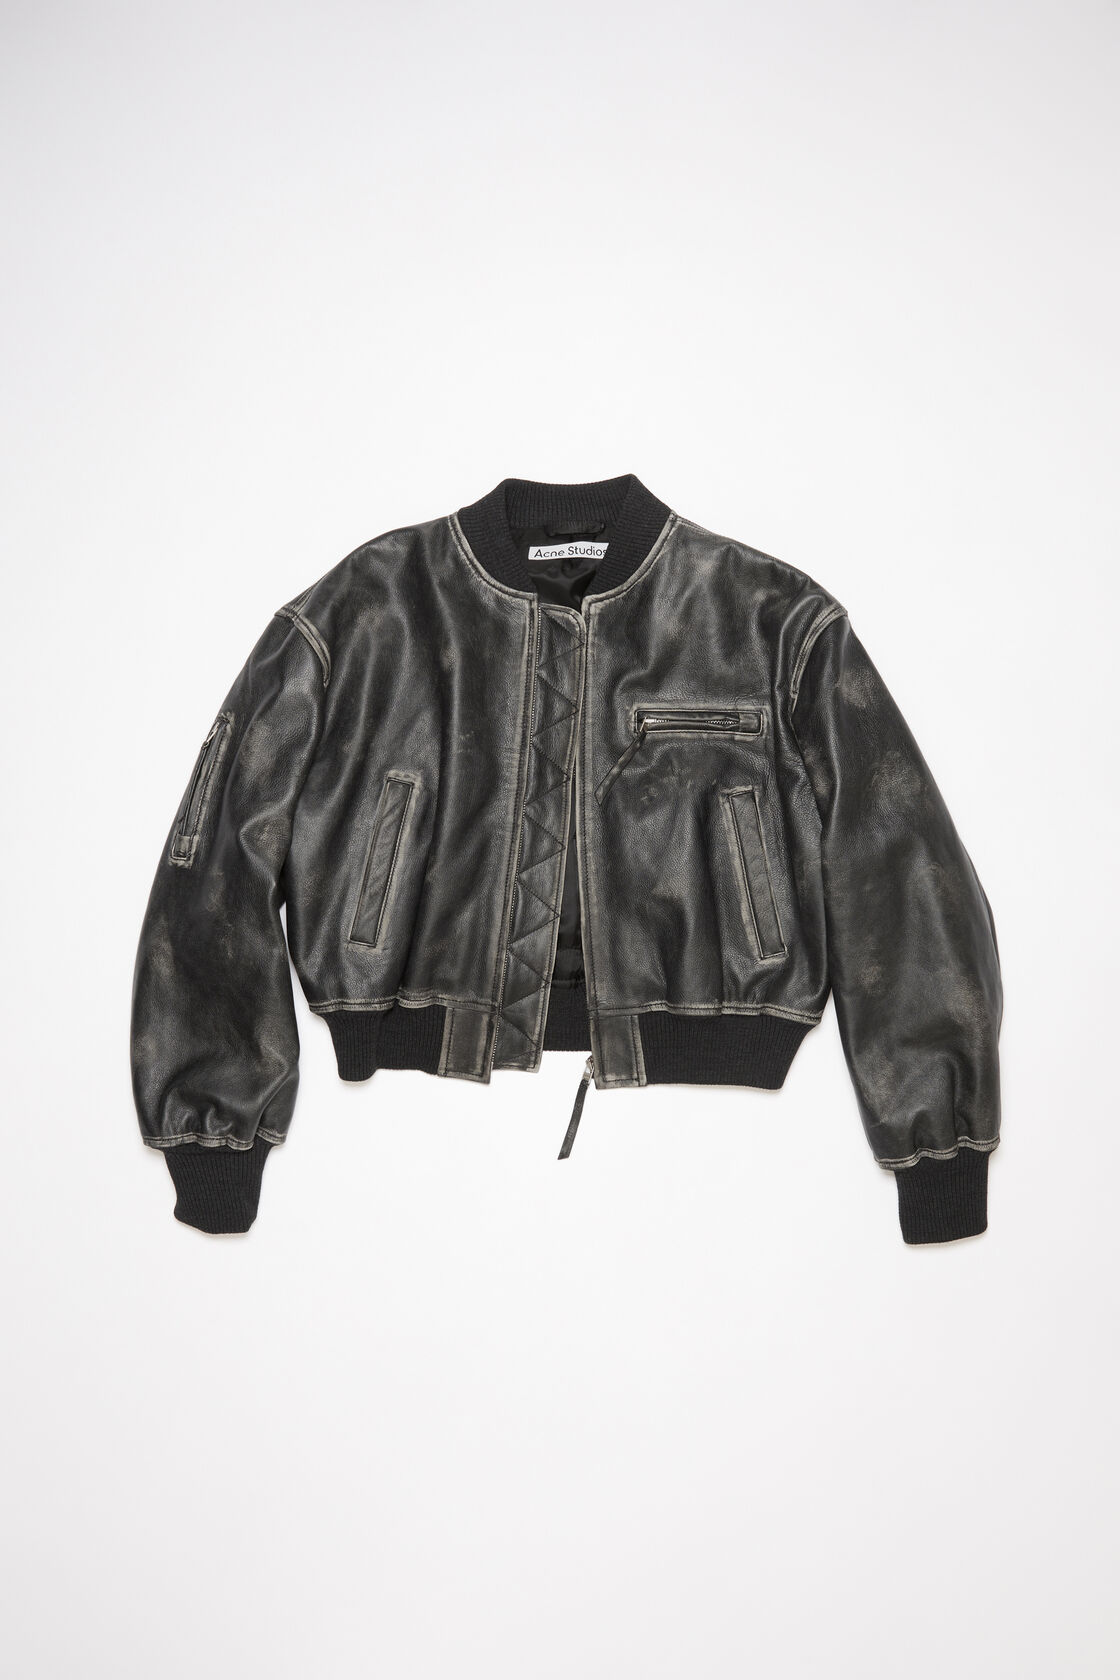 ACNE STUDIOS Leatherjacket in Vintage Black 38